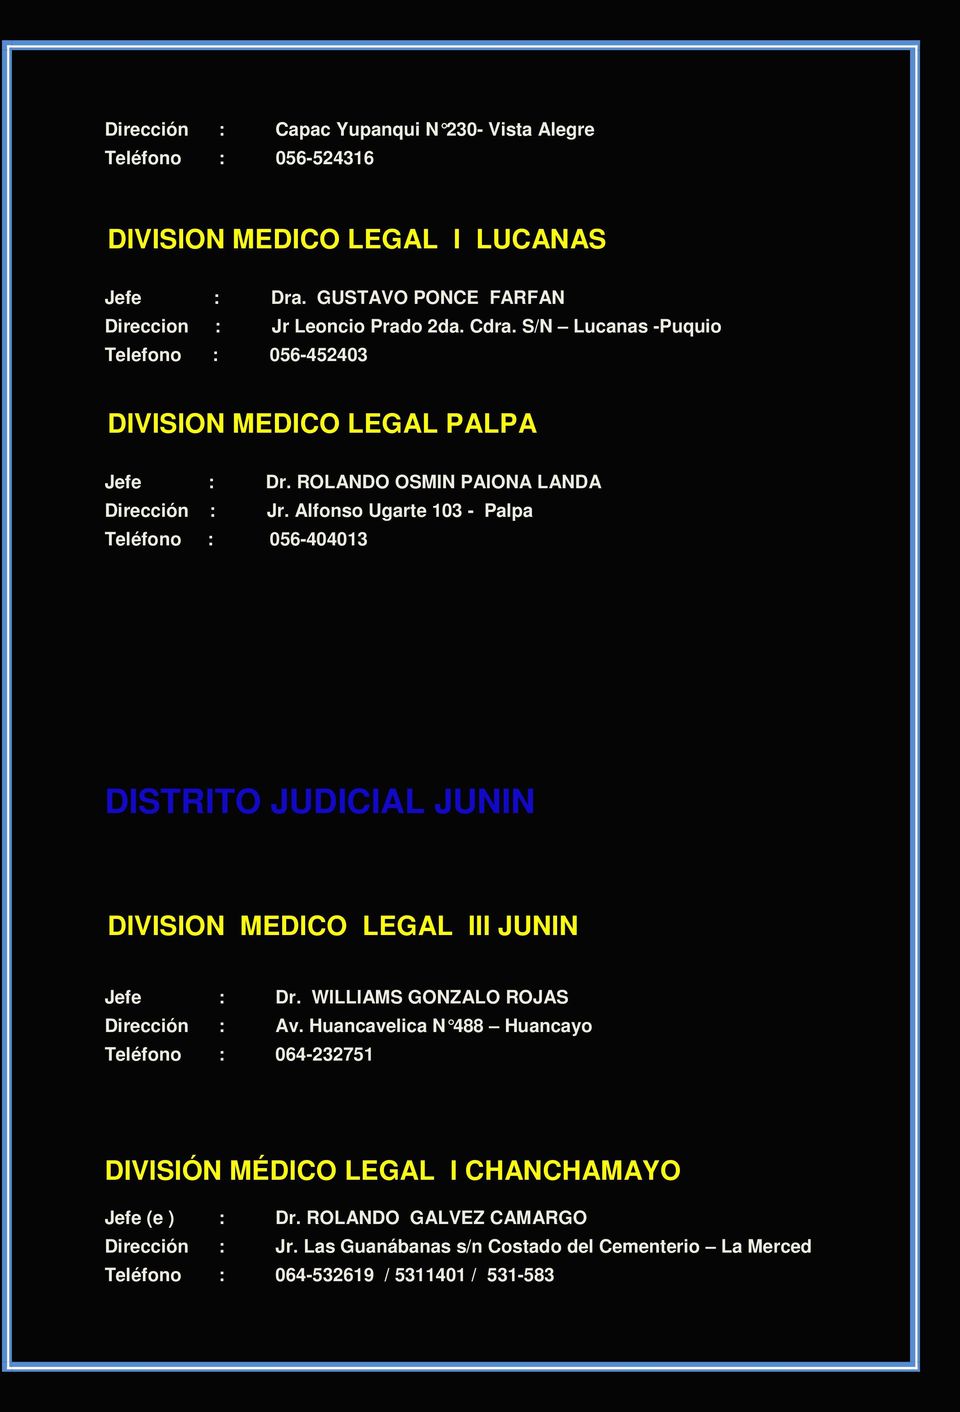 Alfonso Ugarte 103 - Palpa Teléfono : 056-404013 DISTRITO JUDICIAL JUNIN DIVISION MEDICO LEGAL III JUNIN Jefe : Dr. WILLIAMS GONZALO ROJAS Dirección : Av.